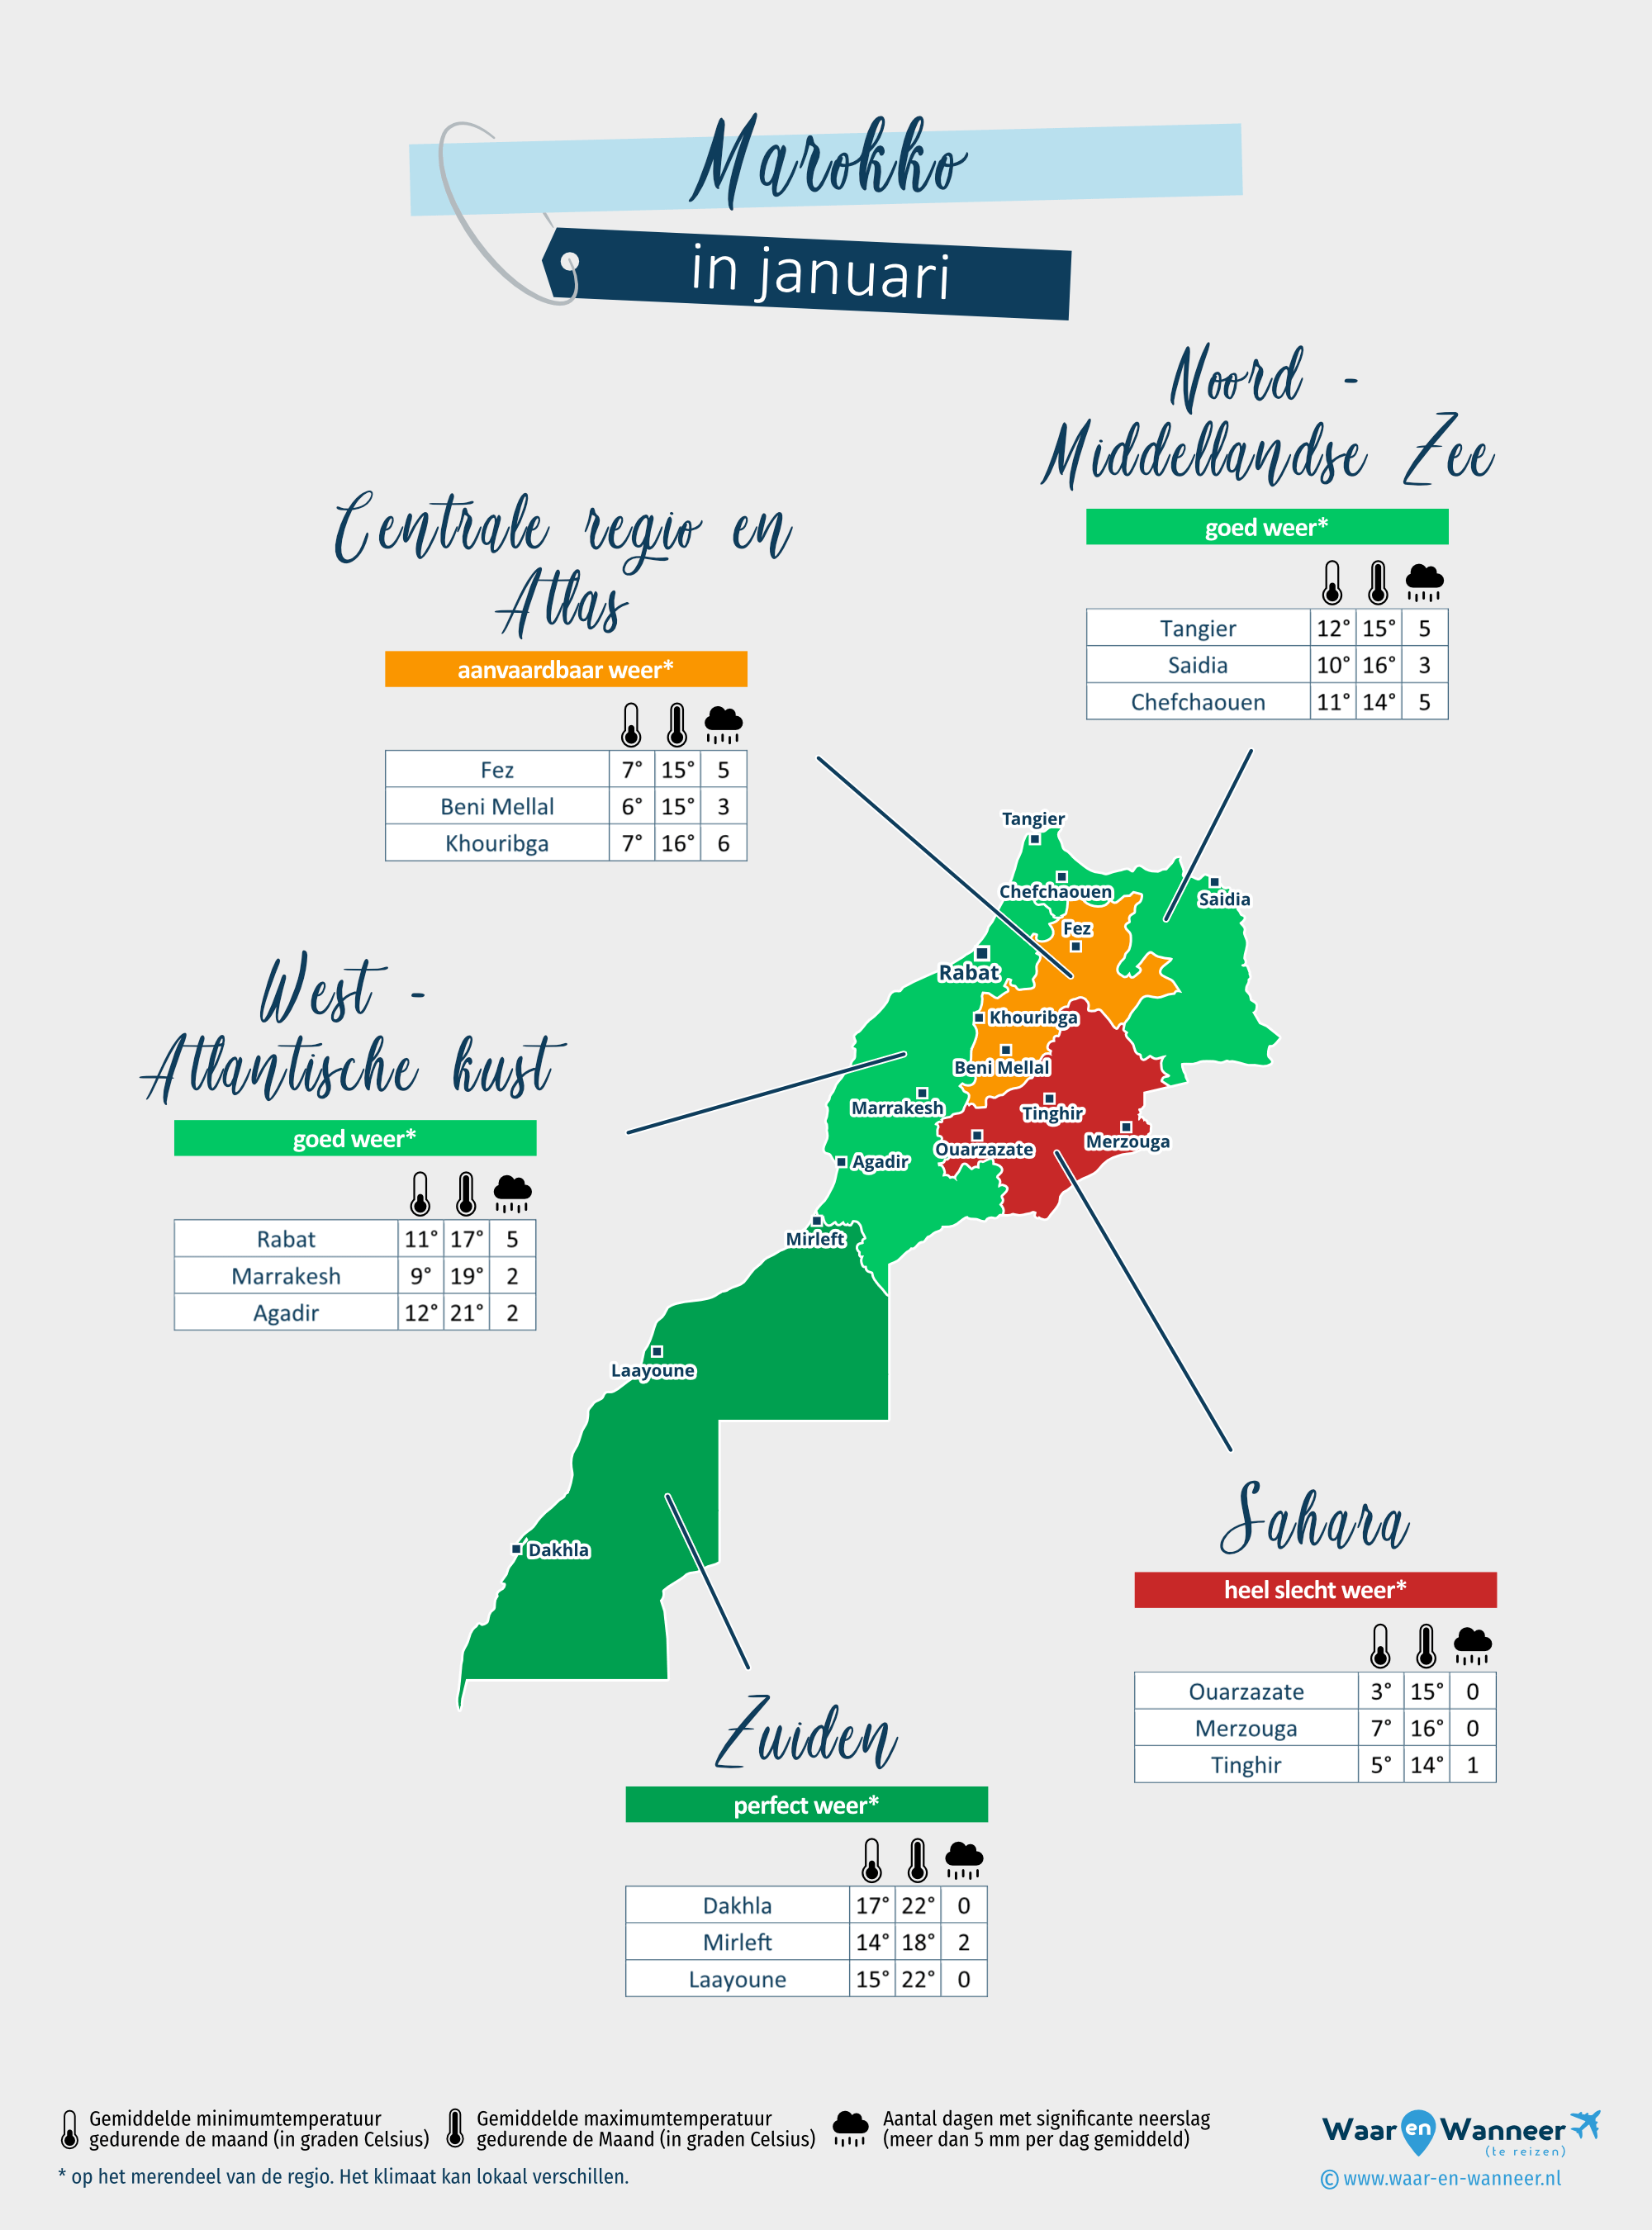 Marokko: weerkaart in januari in verschillende regio's